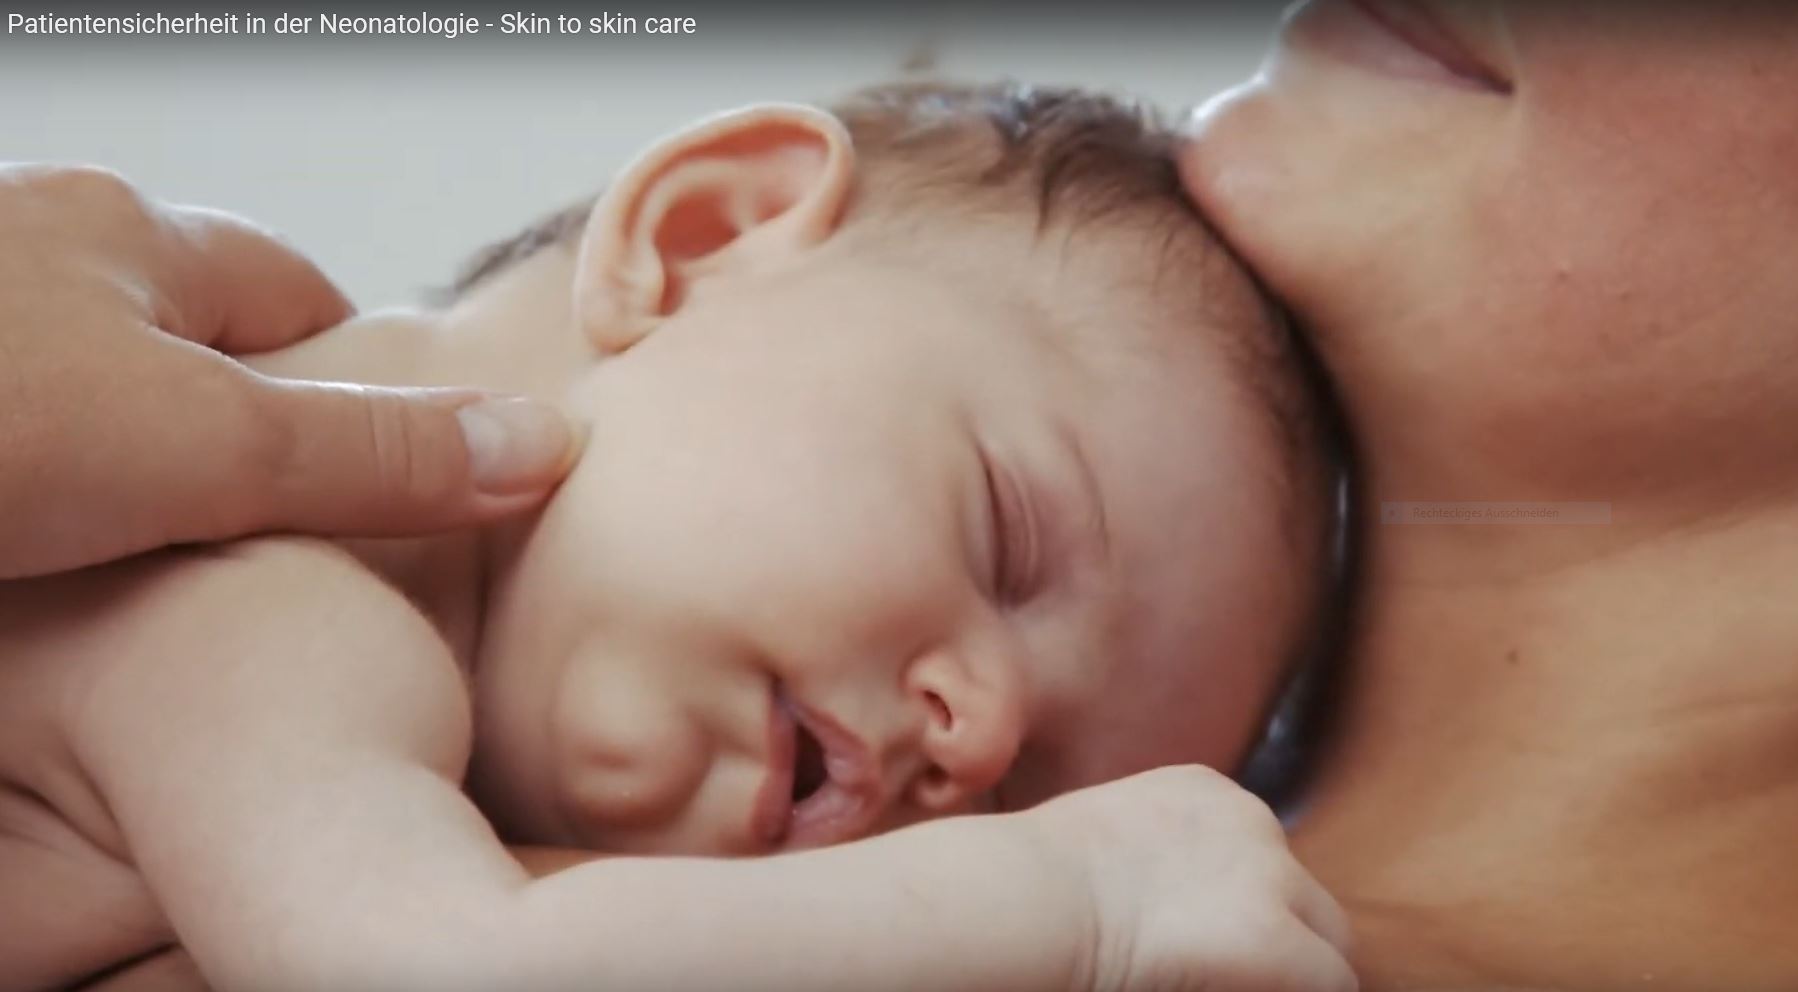 Video zum sicheren Schlafen und Skin-to-Skin-Care